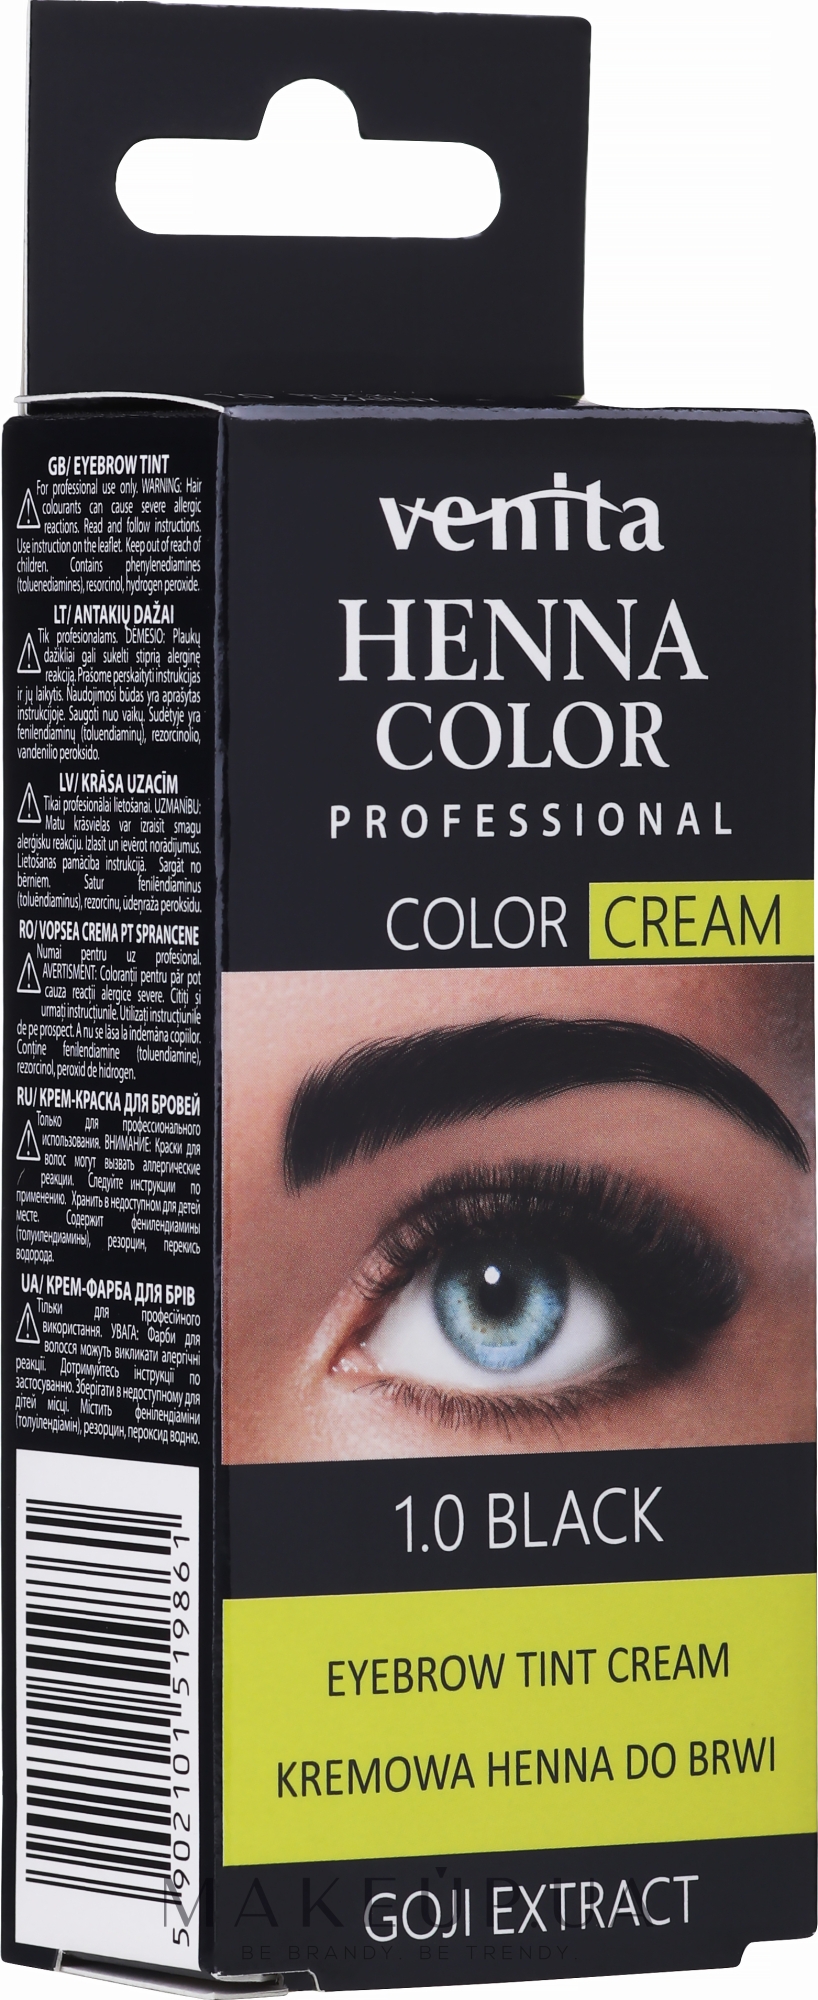 Крем-краска для окрашивания бровей с хной - Venita Professional Henna Color Cream Eyebrow Tint Cream Goji Extract — фото 1.0 - Black